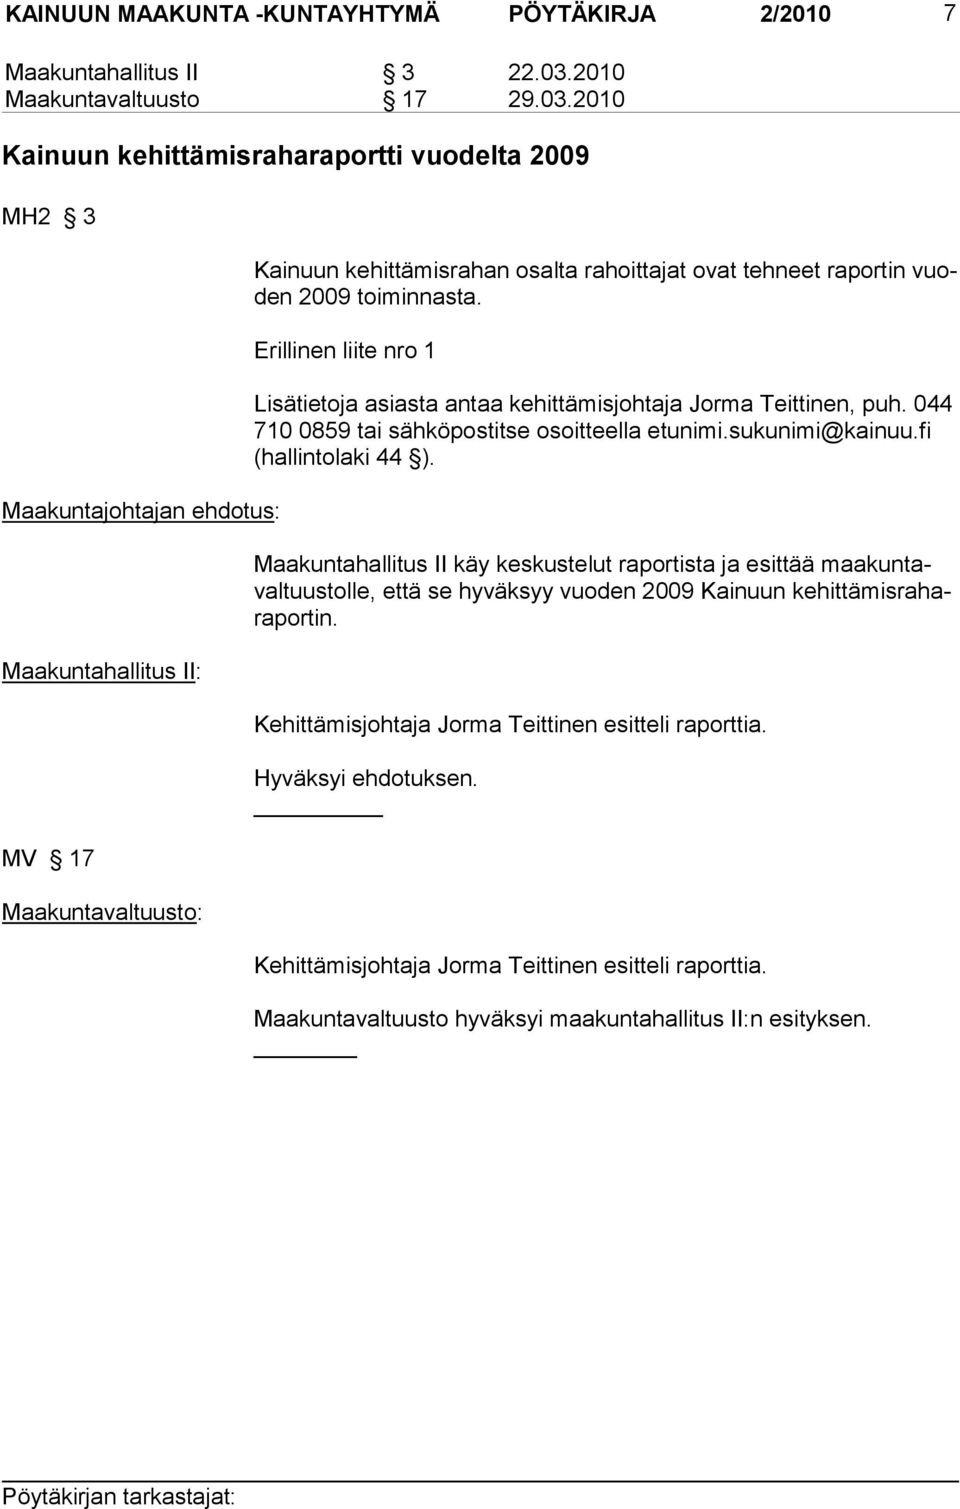 2010 Kainuun kehittämisraharaportti vuodelta 2009 MH2 3 Maakuntajohtajan ehdotus: Maakuntahallitus II: MV 17 Kainuun kehittämisrahan osalta rahoittajat ovat tehneet raportin vuoden 2009 toiminnasta.